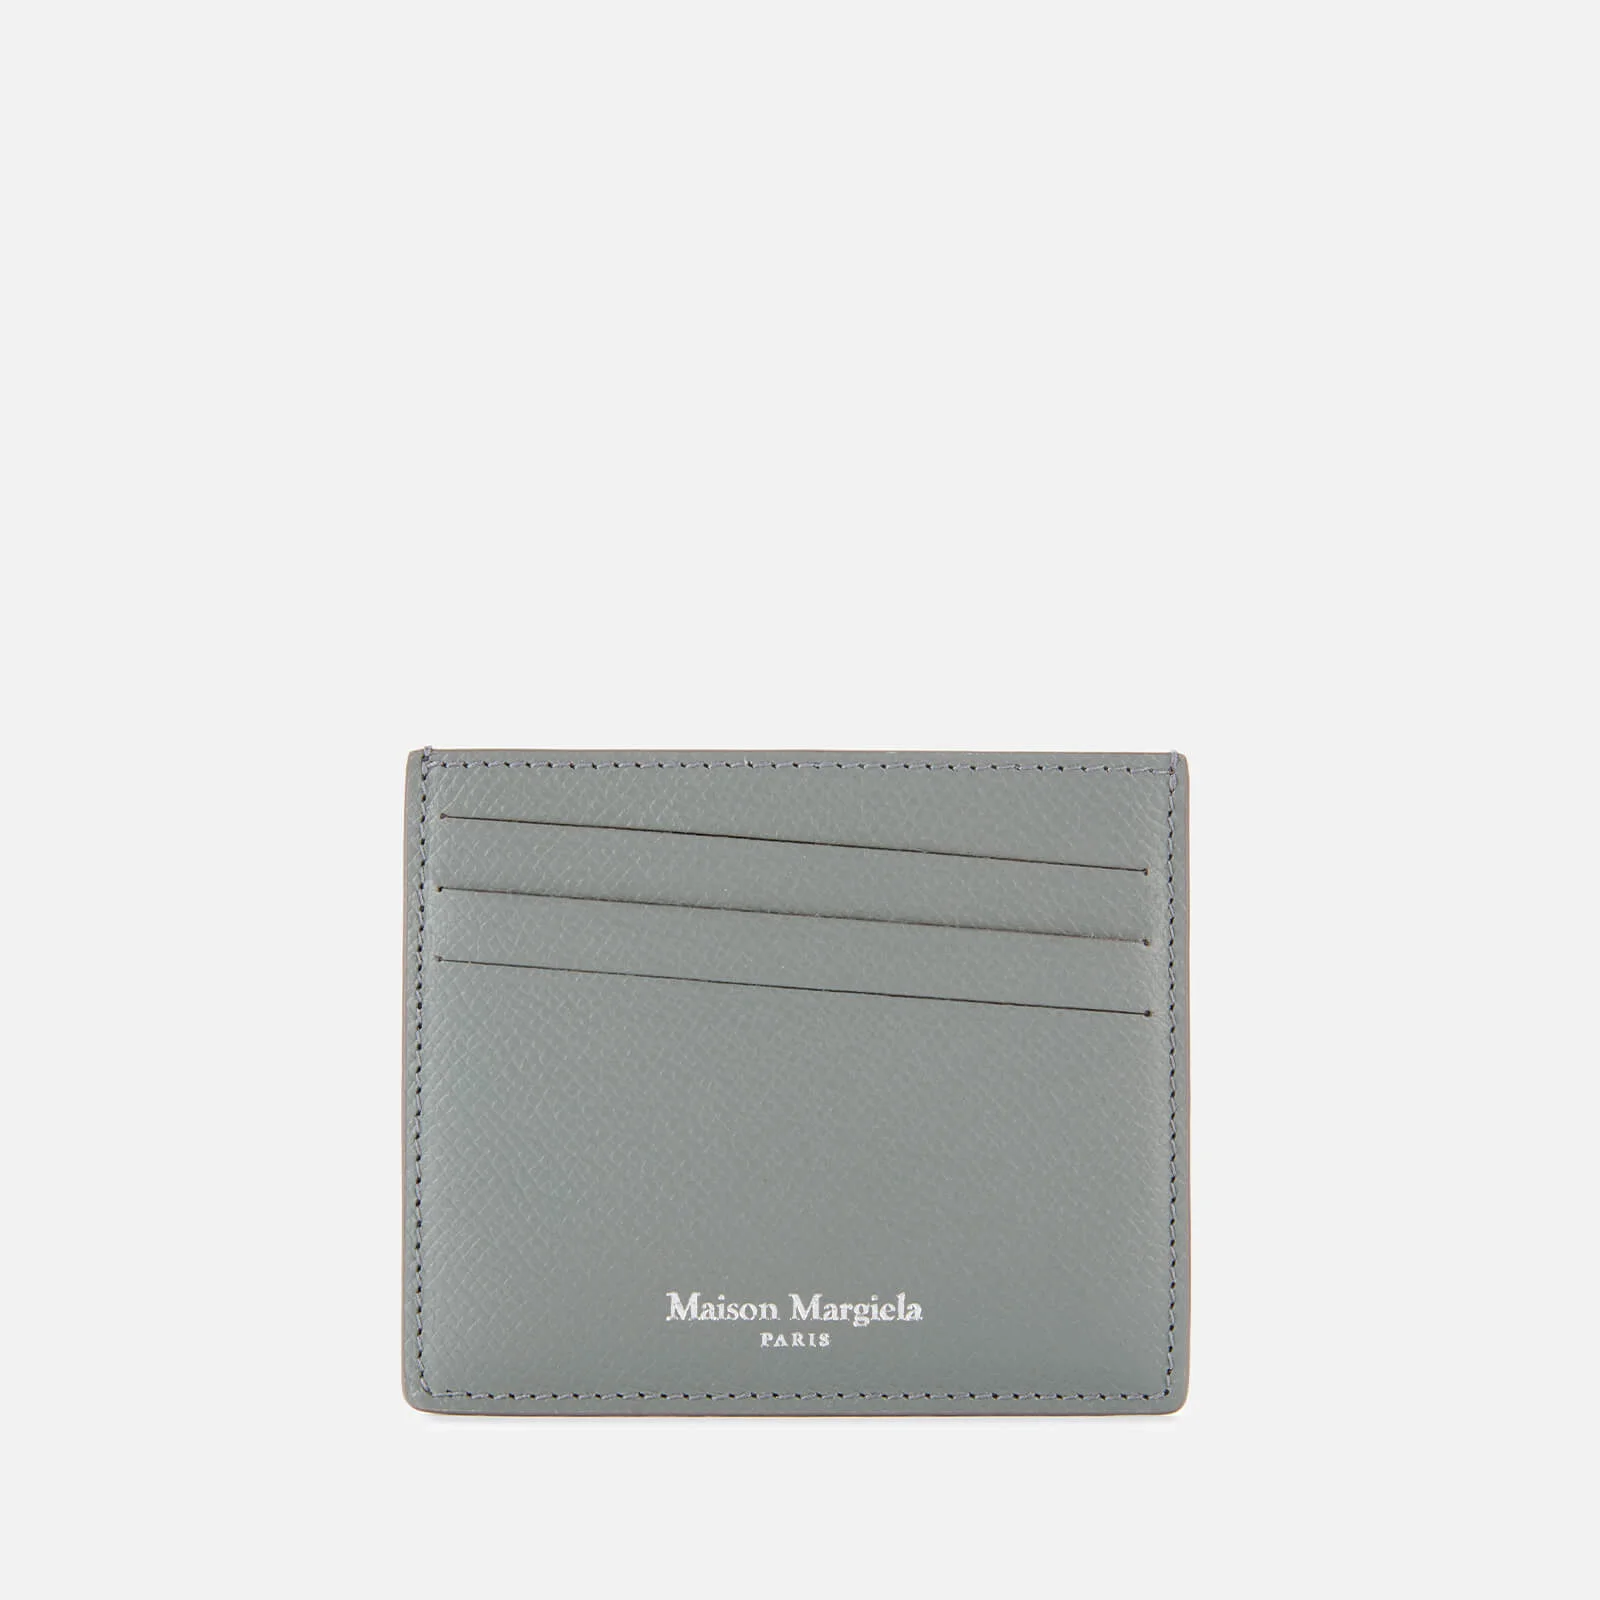 Maison Margiela Men's Leather Cardholder - Wrought Iron Image 1